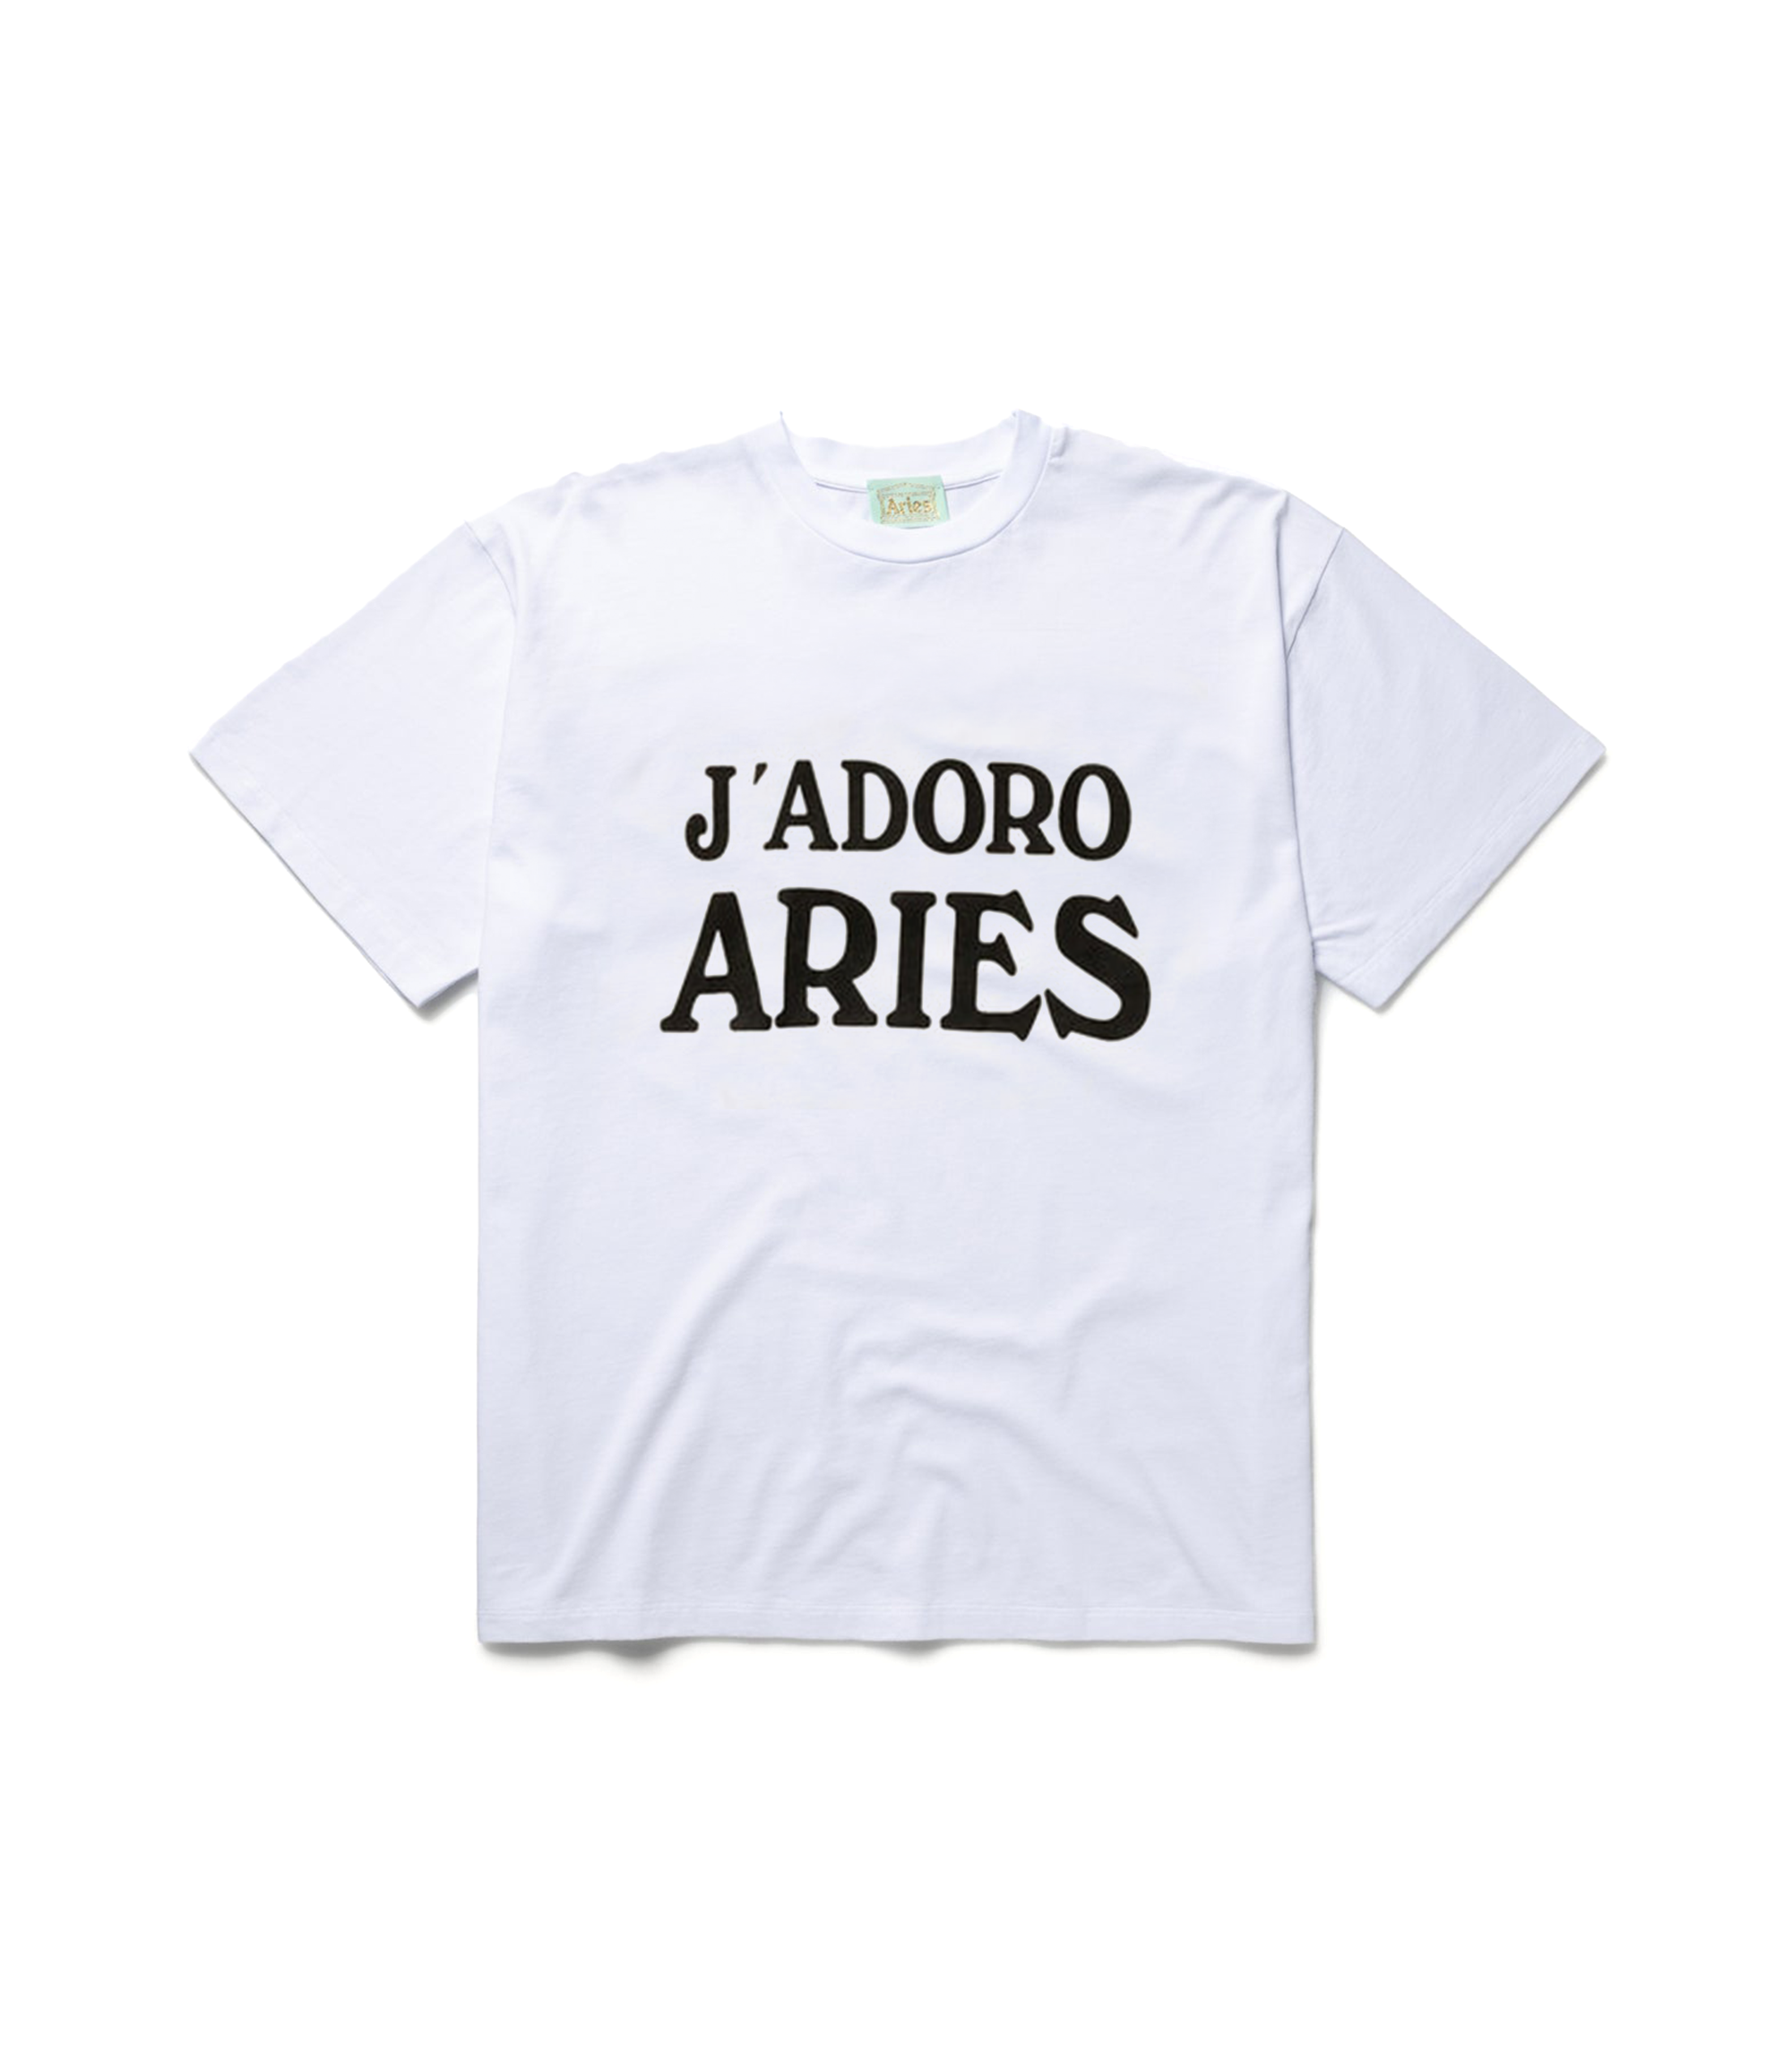 Jadoro Aries T-Shirt - White